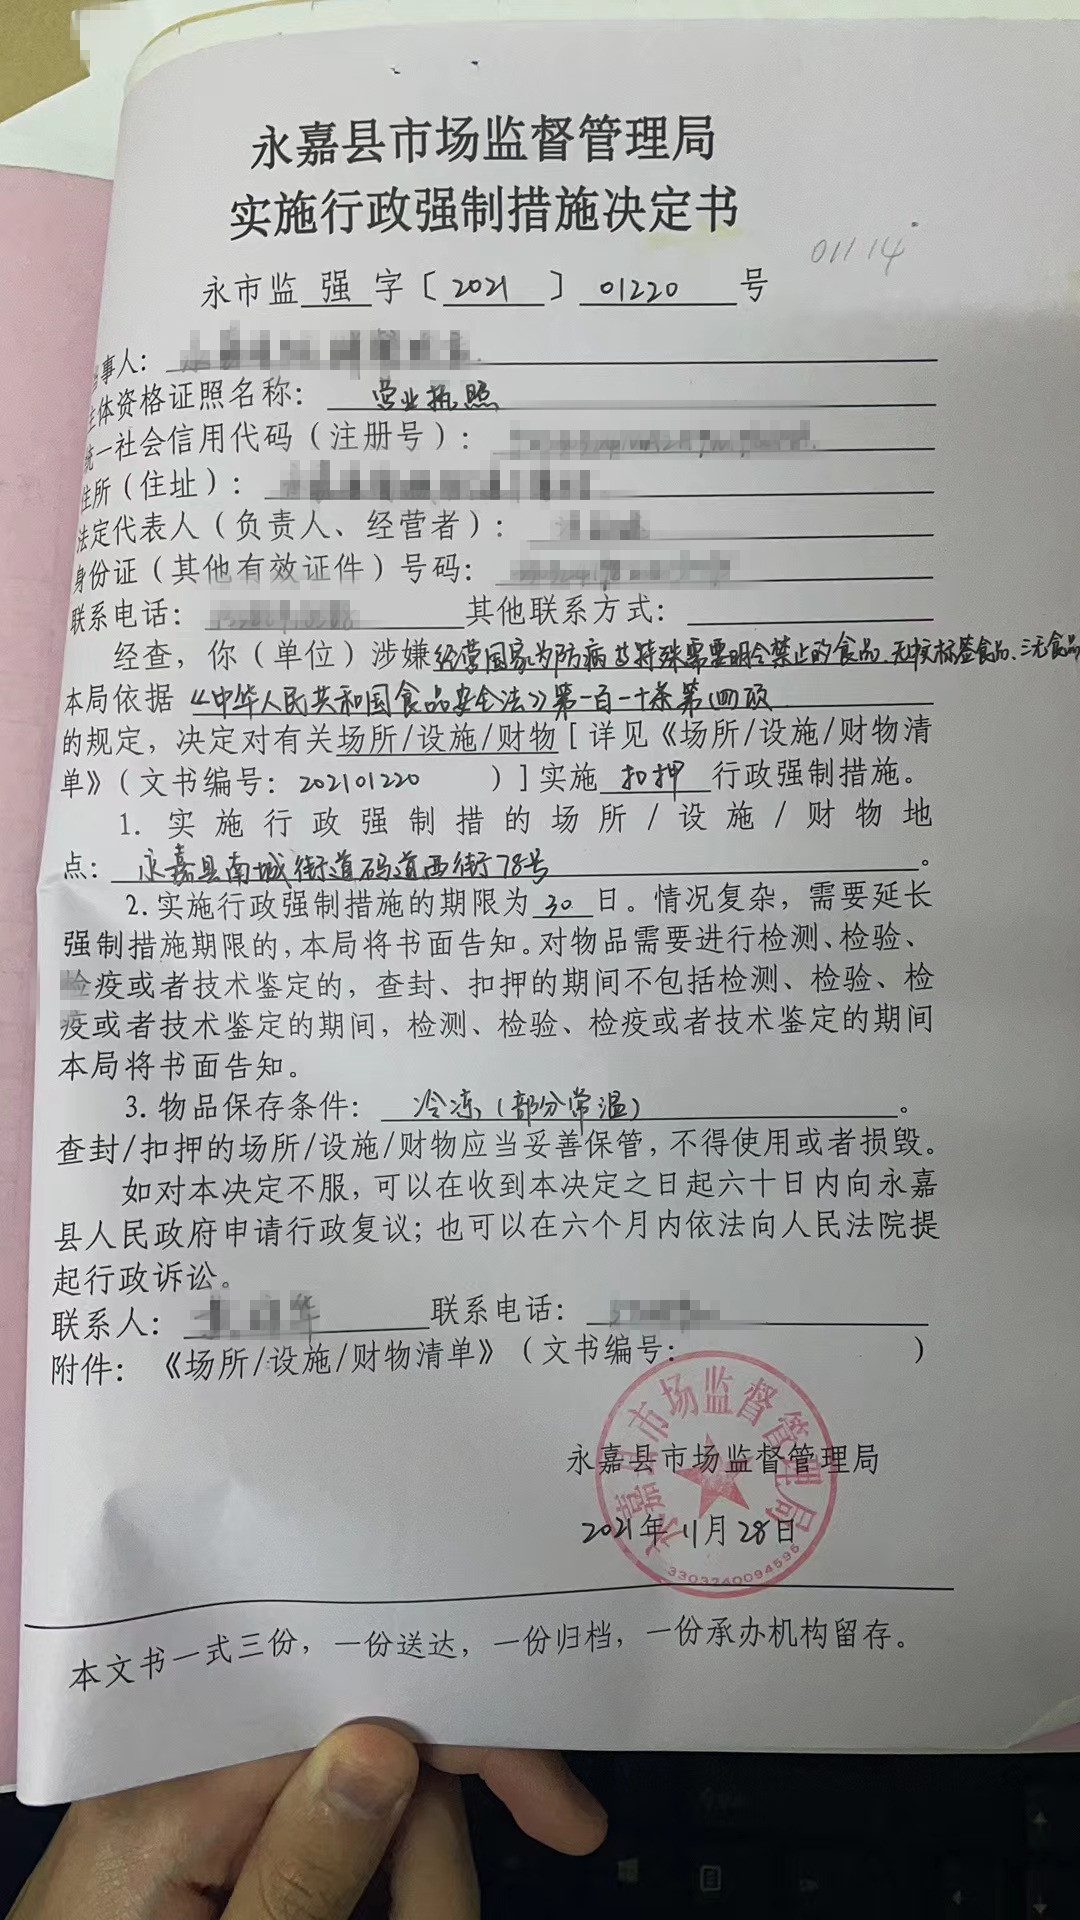 《海南省药品监管领域包容审慎监管事项清单》发布，15种违法行为不予行政处罚